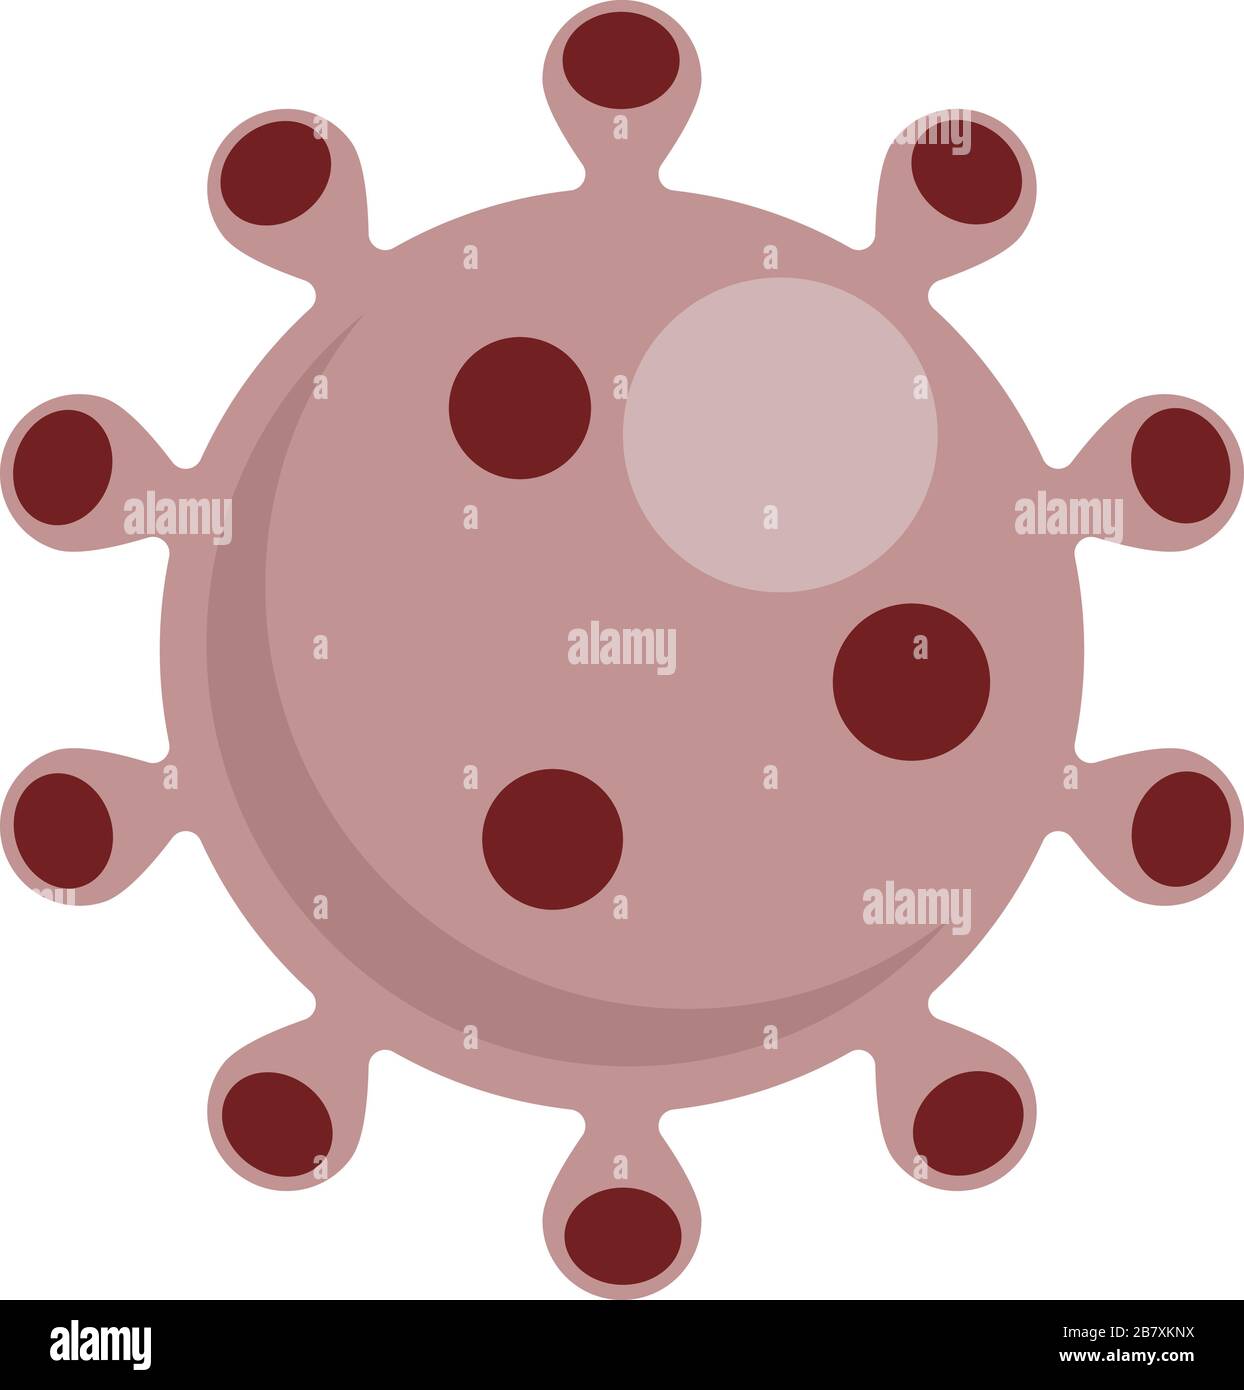 Simbolo del virus coronavirus COVID-19. Nuovo focolaio di coronavirus. Allarme pandemico globale. Epidemia di Covid-19. Illustrazione del vettore isolato. Illustrazione Vettoriale